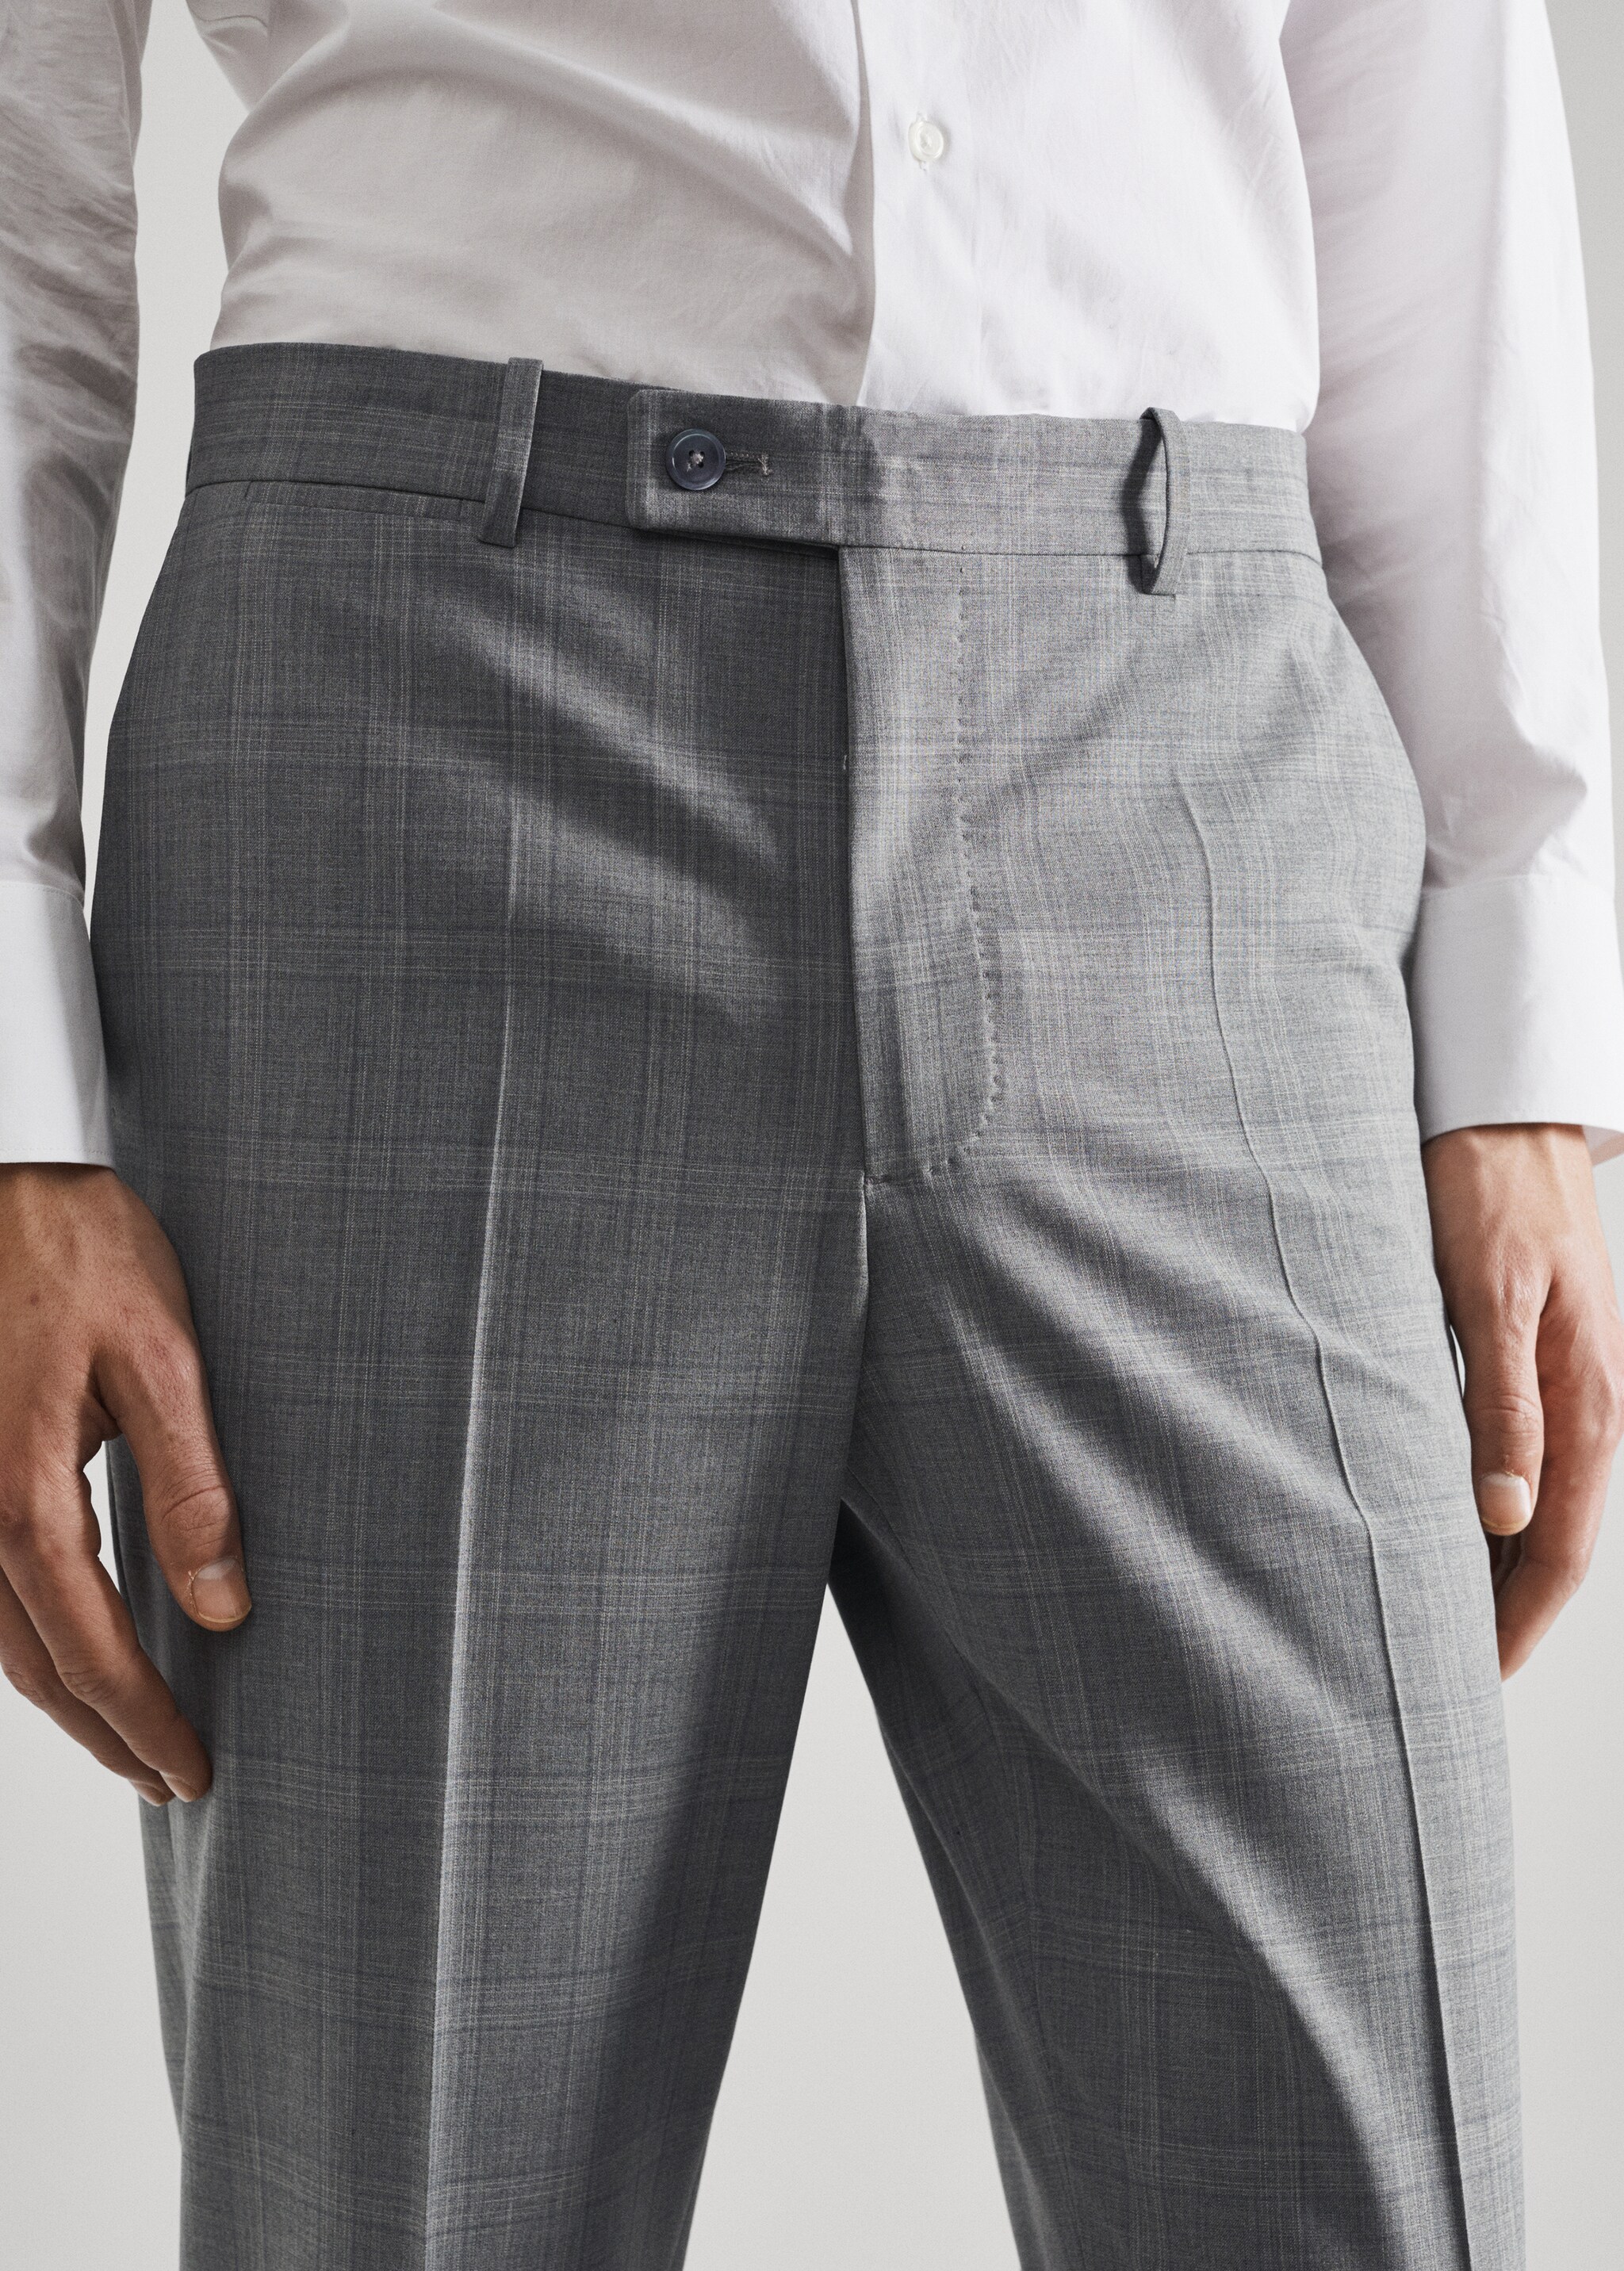 Pantalón traje slim fit lana - Detalle del artículo 1